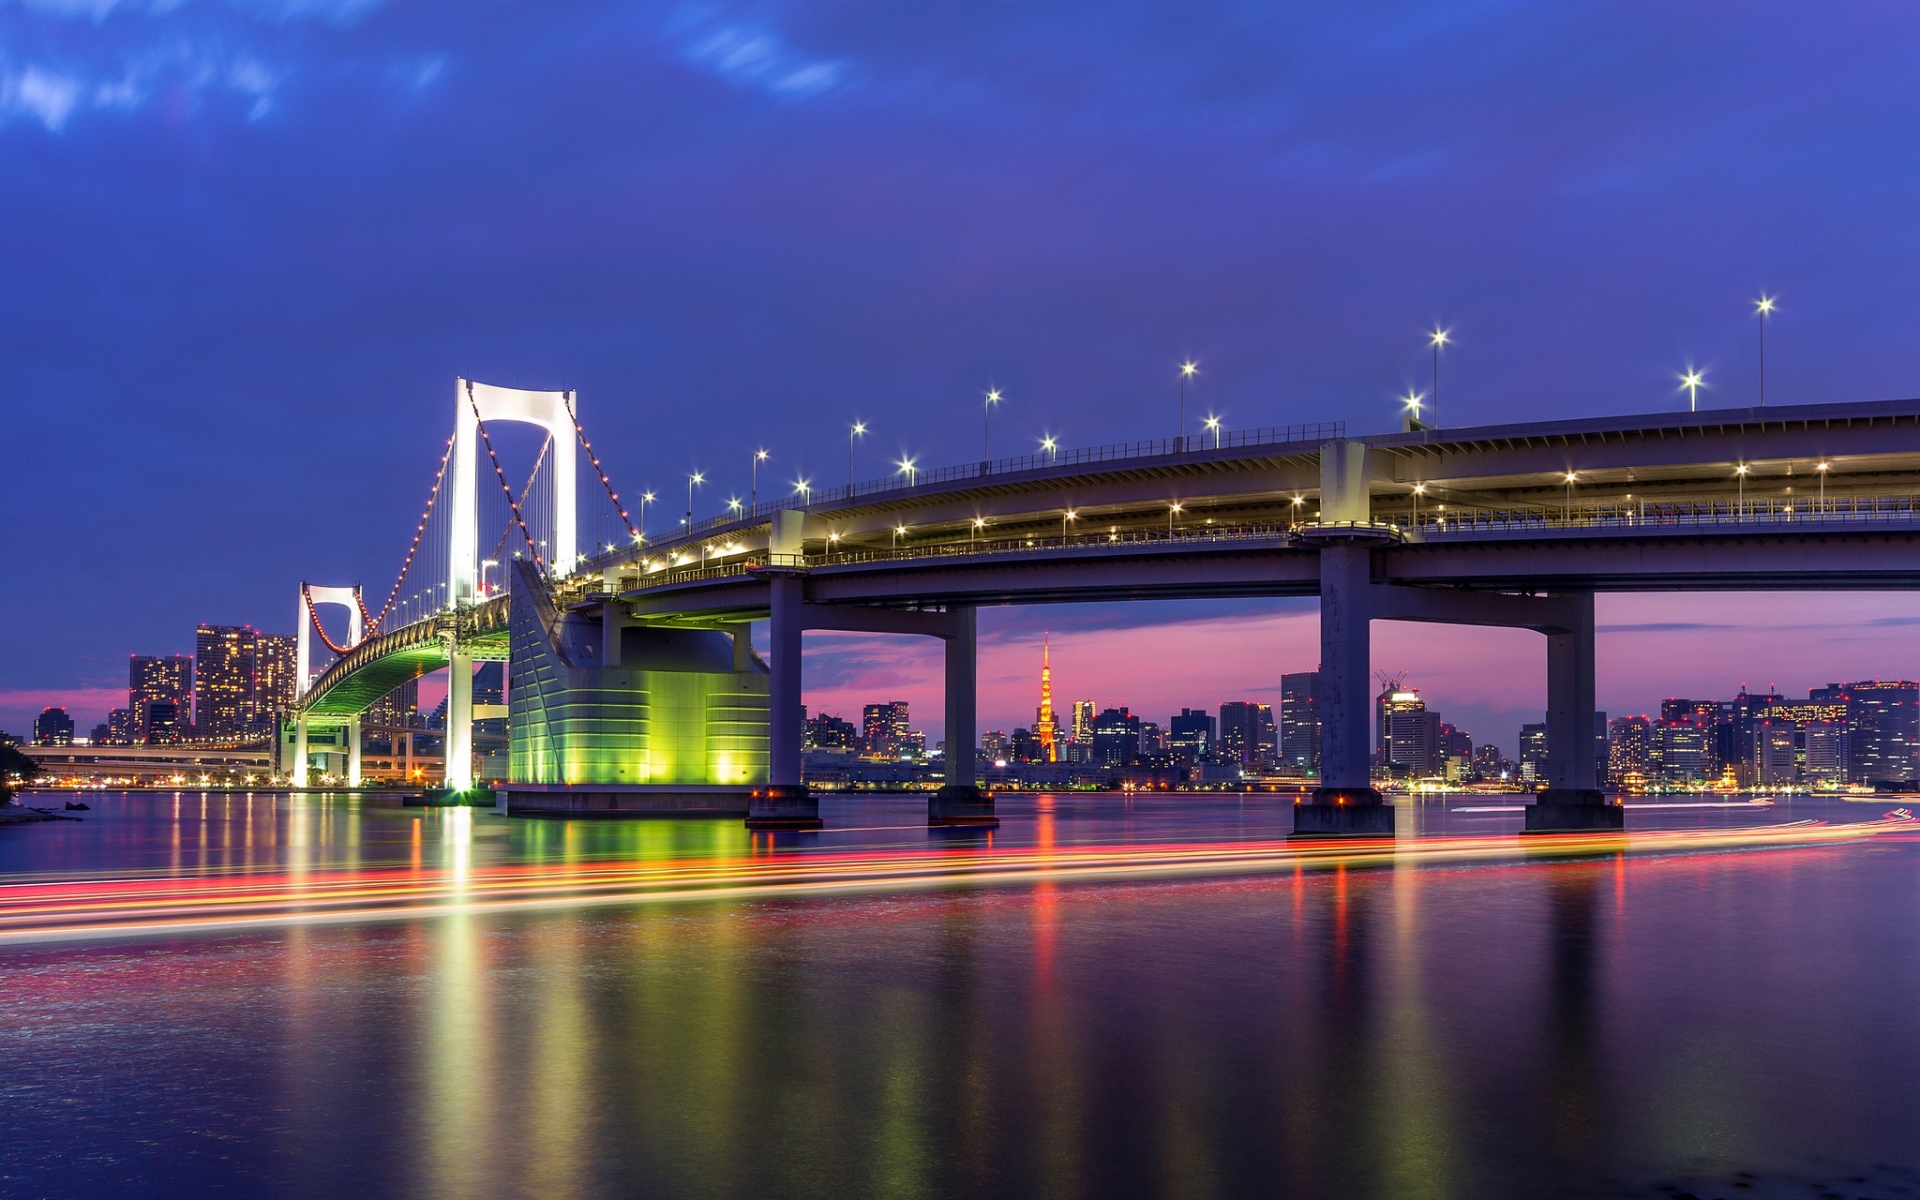 Картинки Токио, столица, мегаполис, мост, огни, освещение, скорость затвора, залив, дома, здания, ночь, синяя, сирень, небо фото и обои на рабочий стол